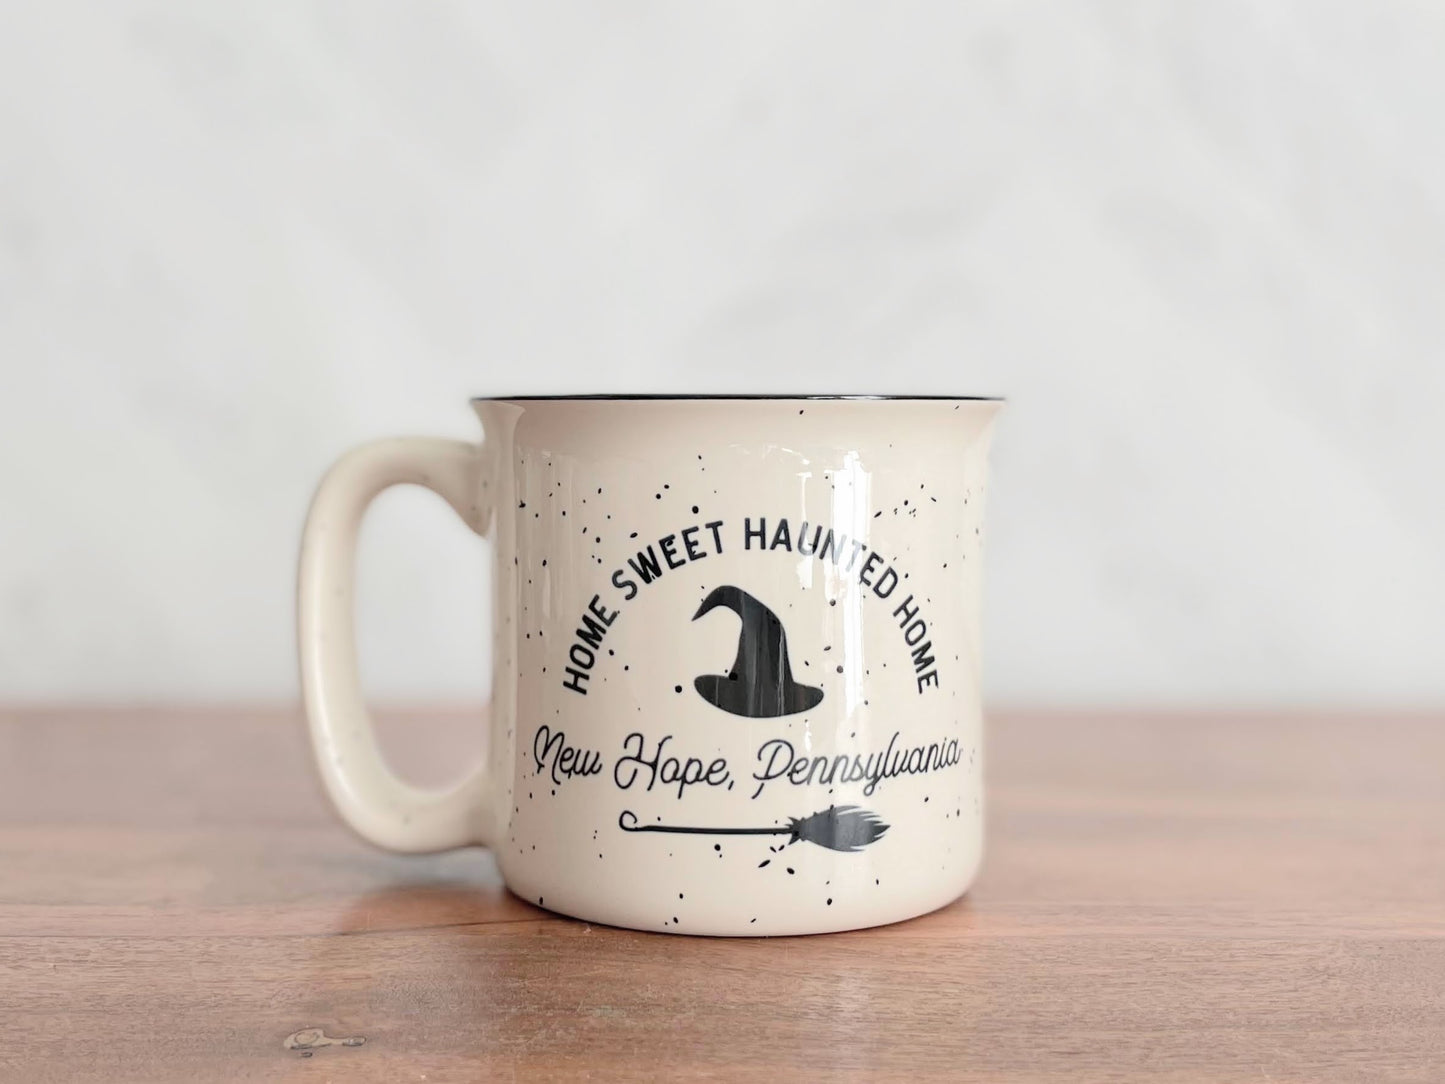 Home Sweet Haunted Home Camper Mug